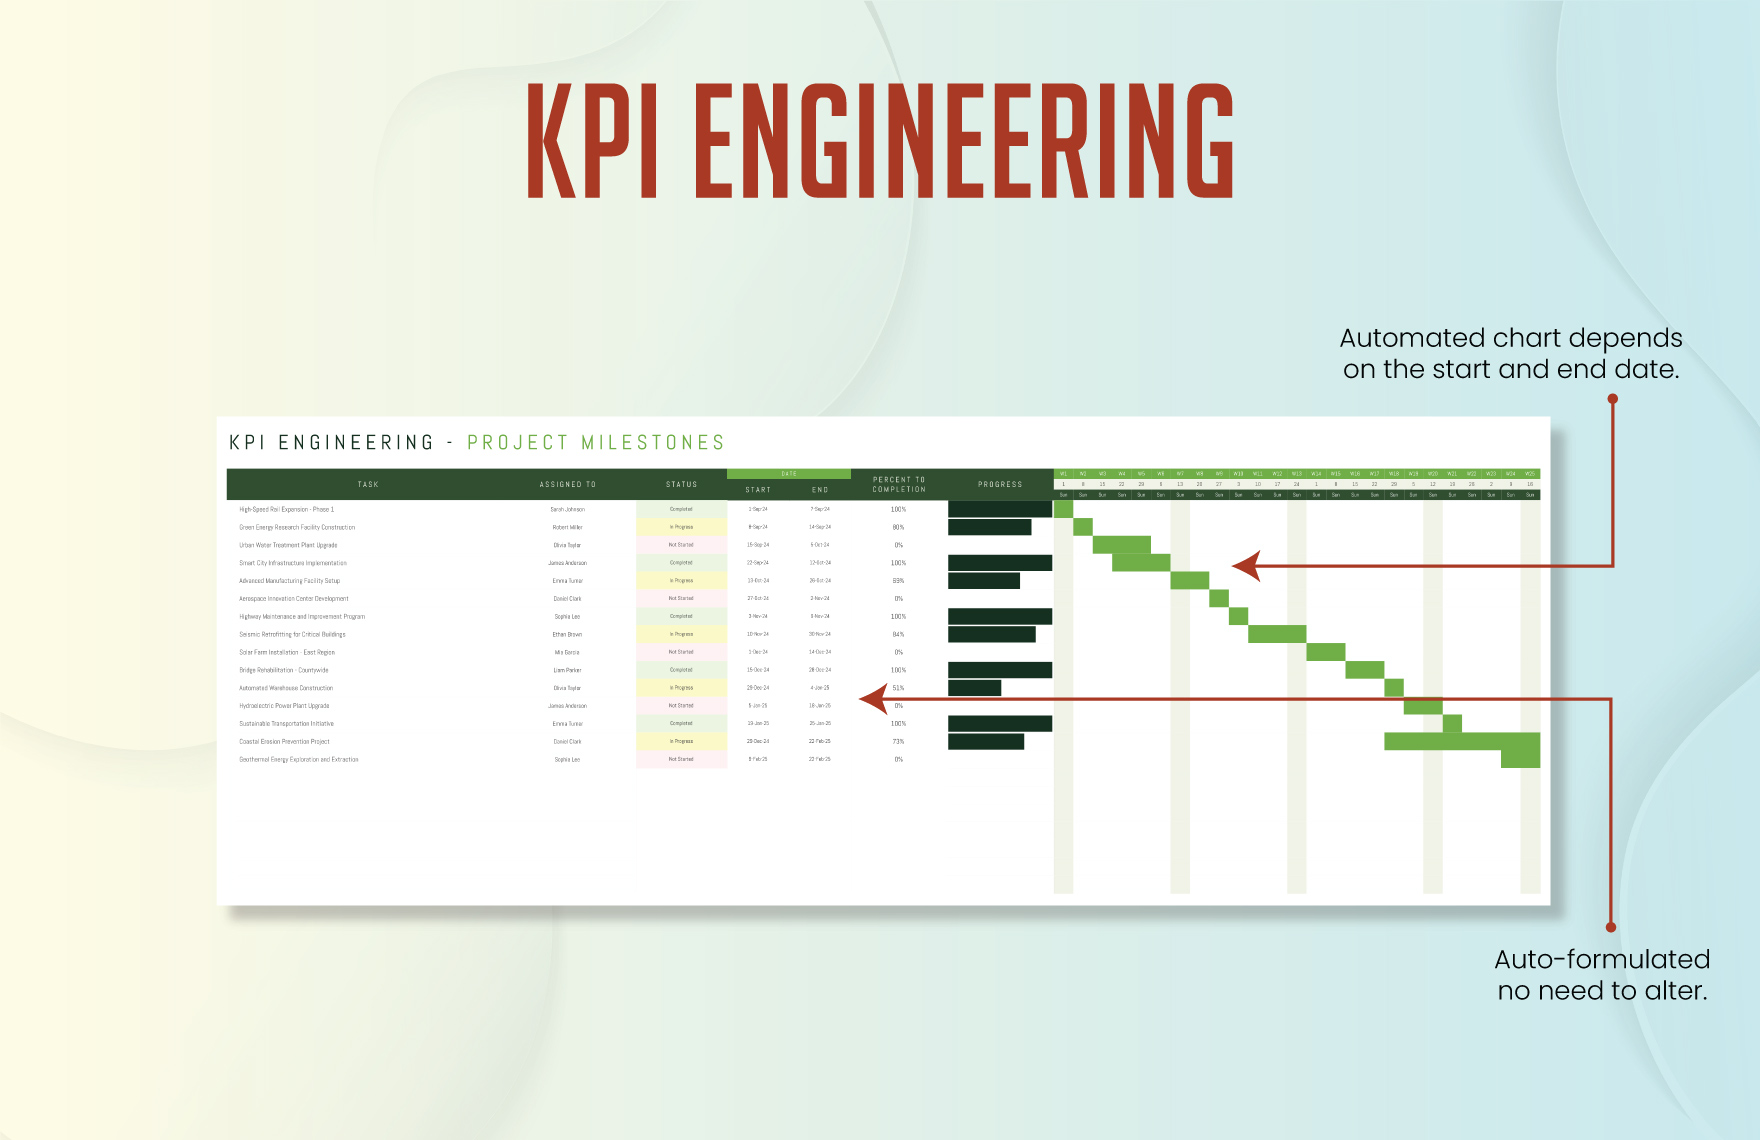 KPI Engineering Template